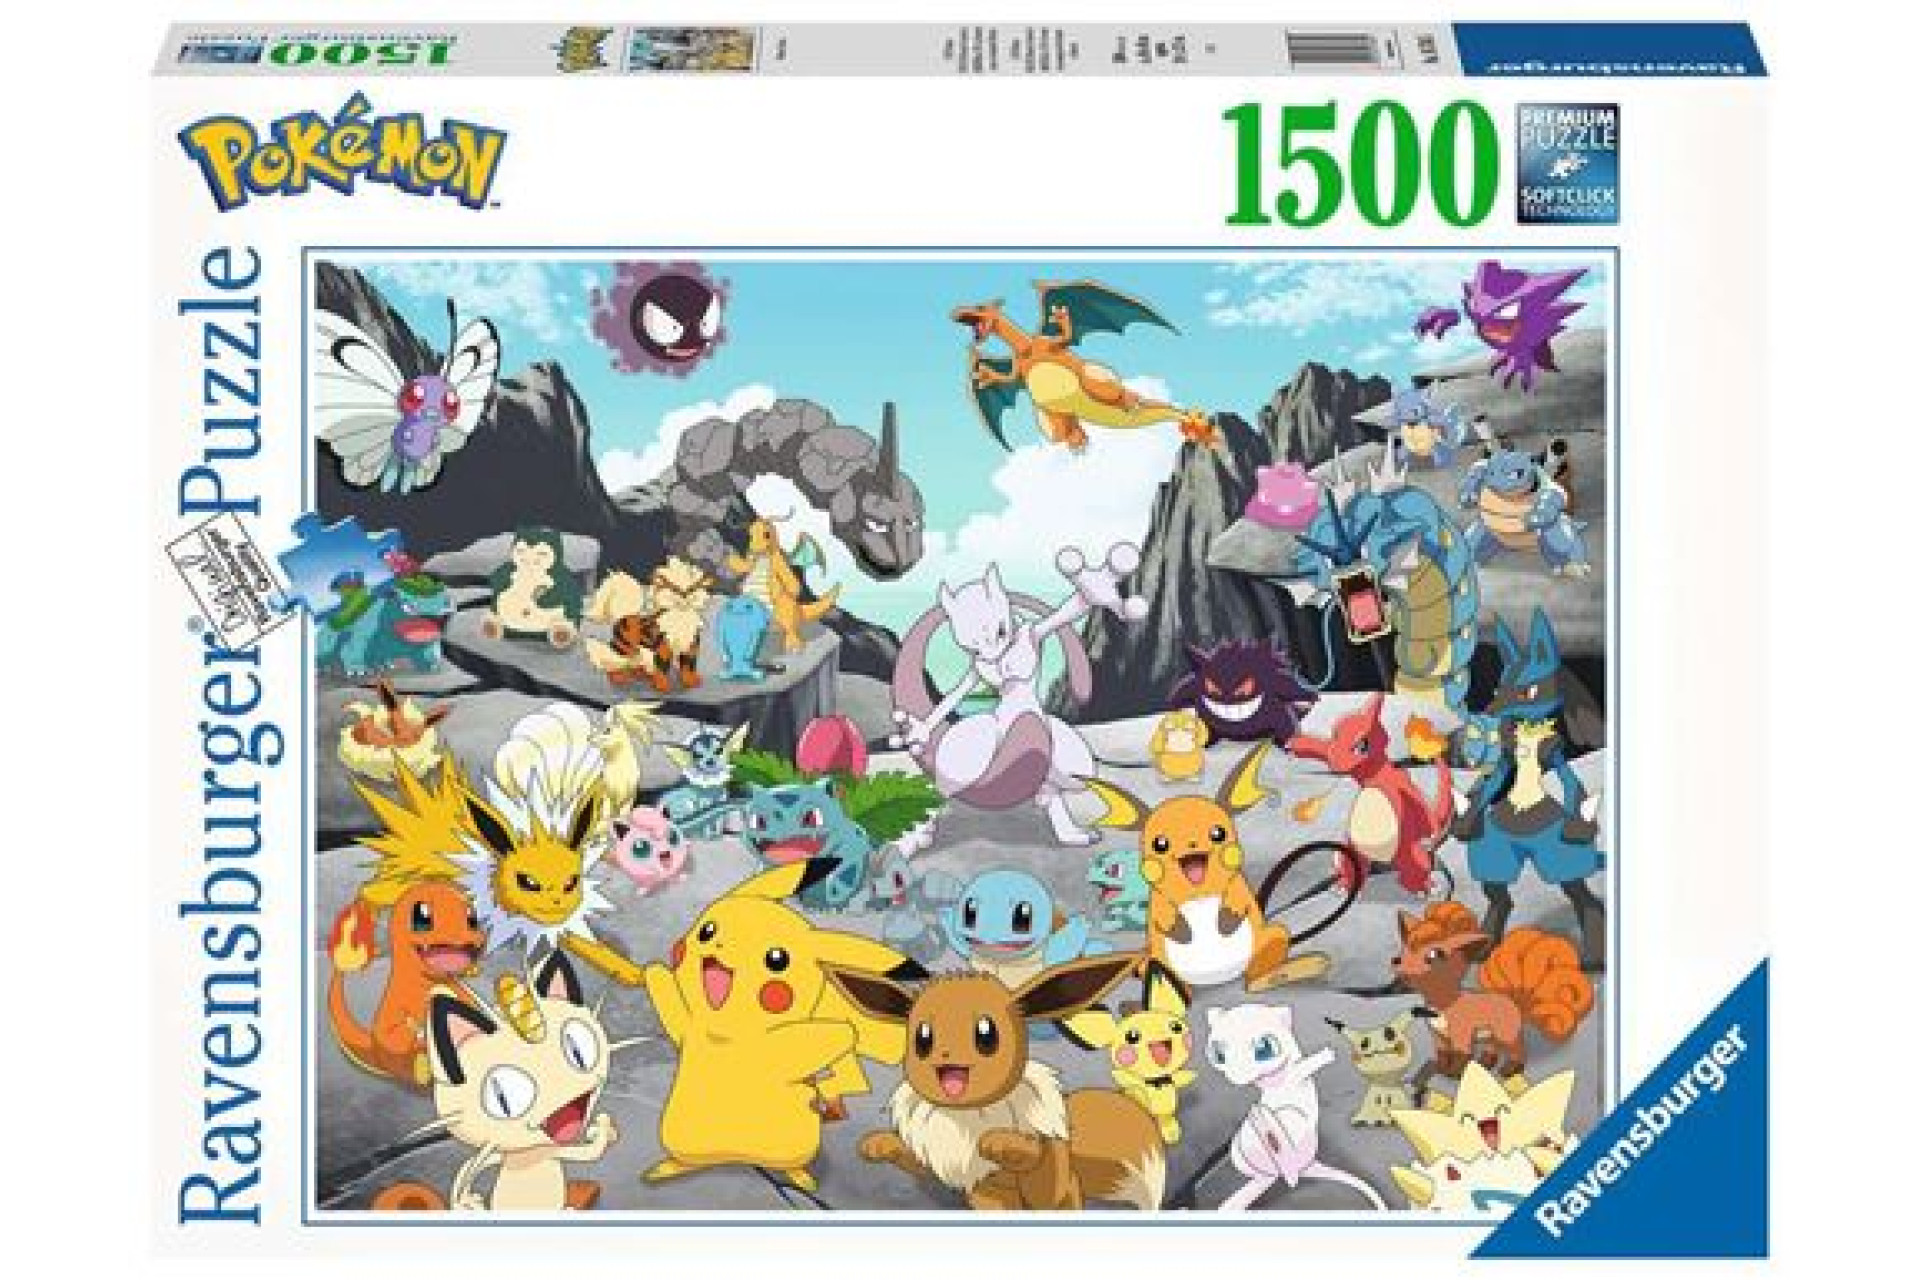 Acheter Puzzle 1500 pièces Ravensburger Pokémon Classics